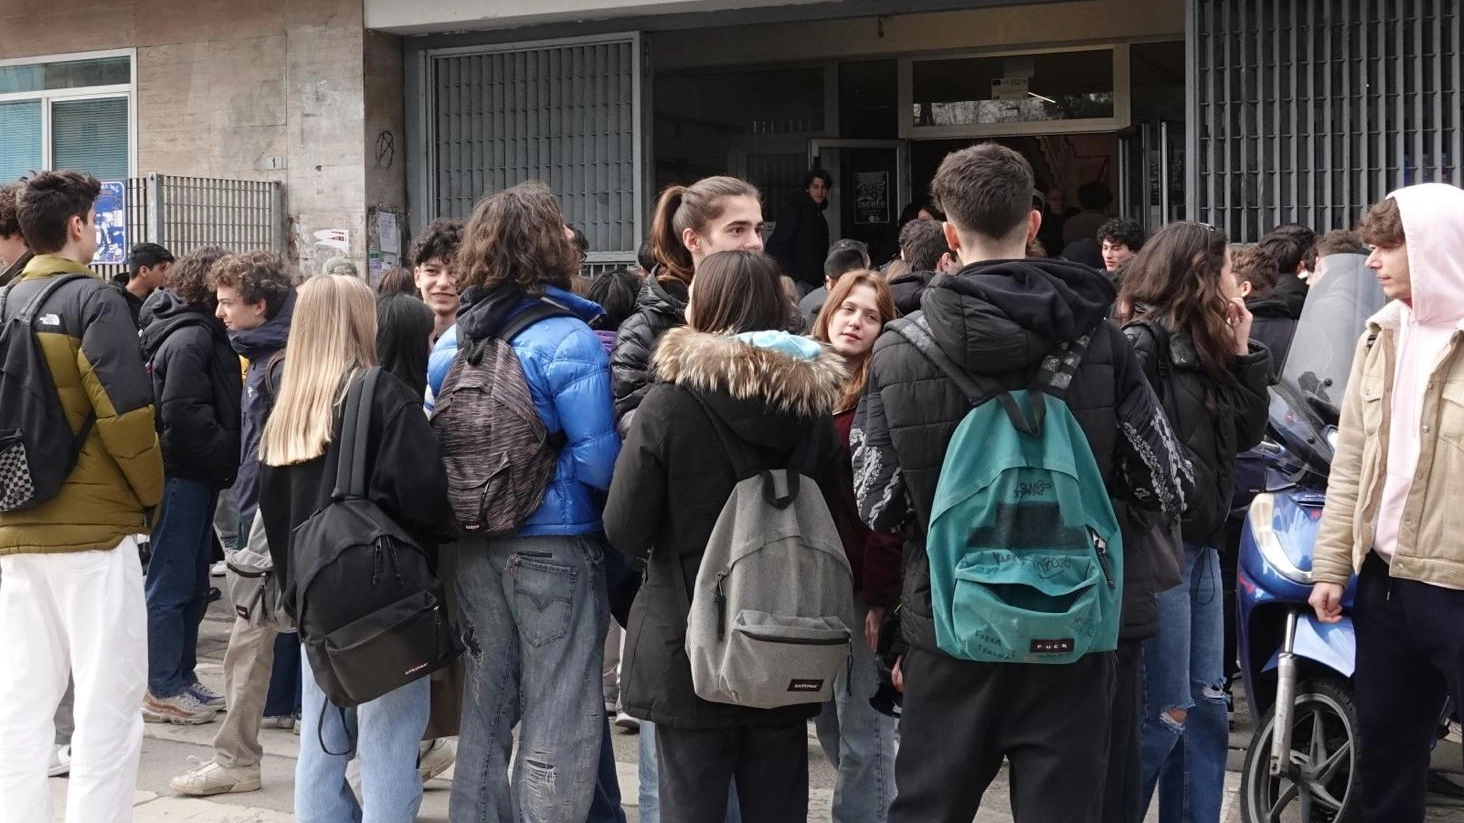 Al Grassi la protesta dei liceali  "Più attenzioni alle nostre richieste"